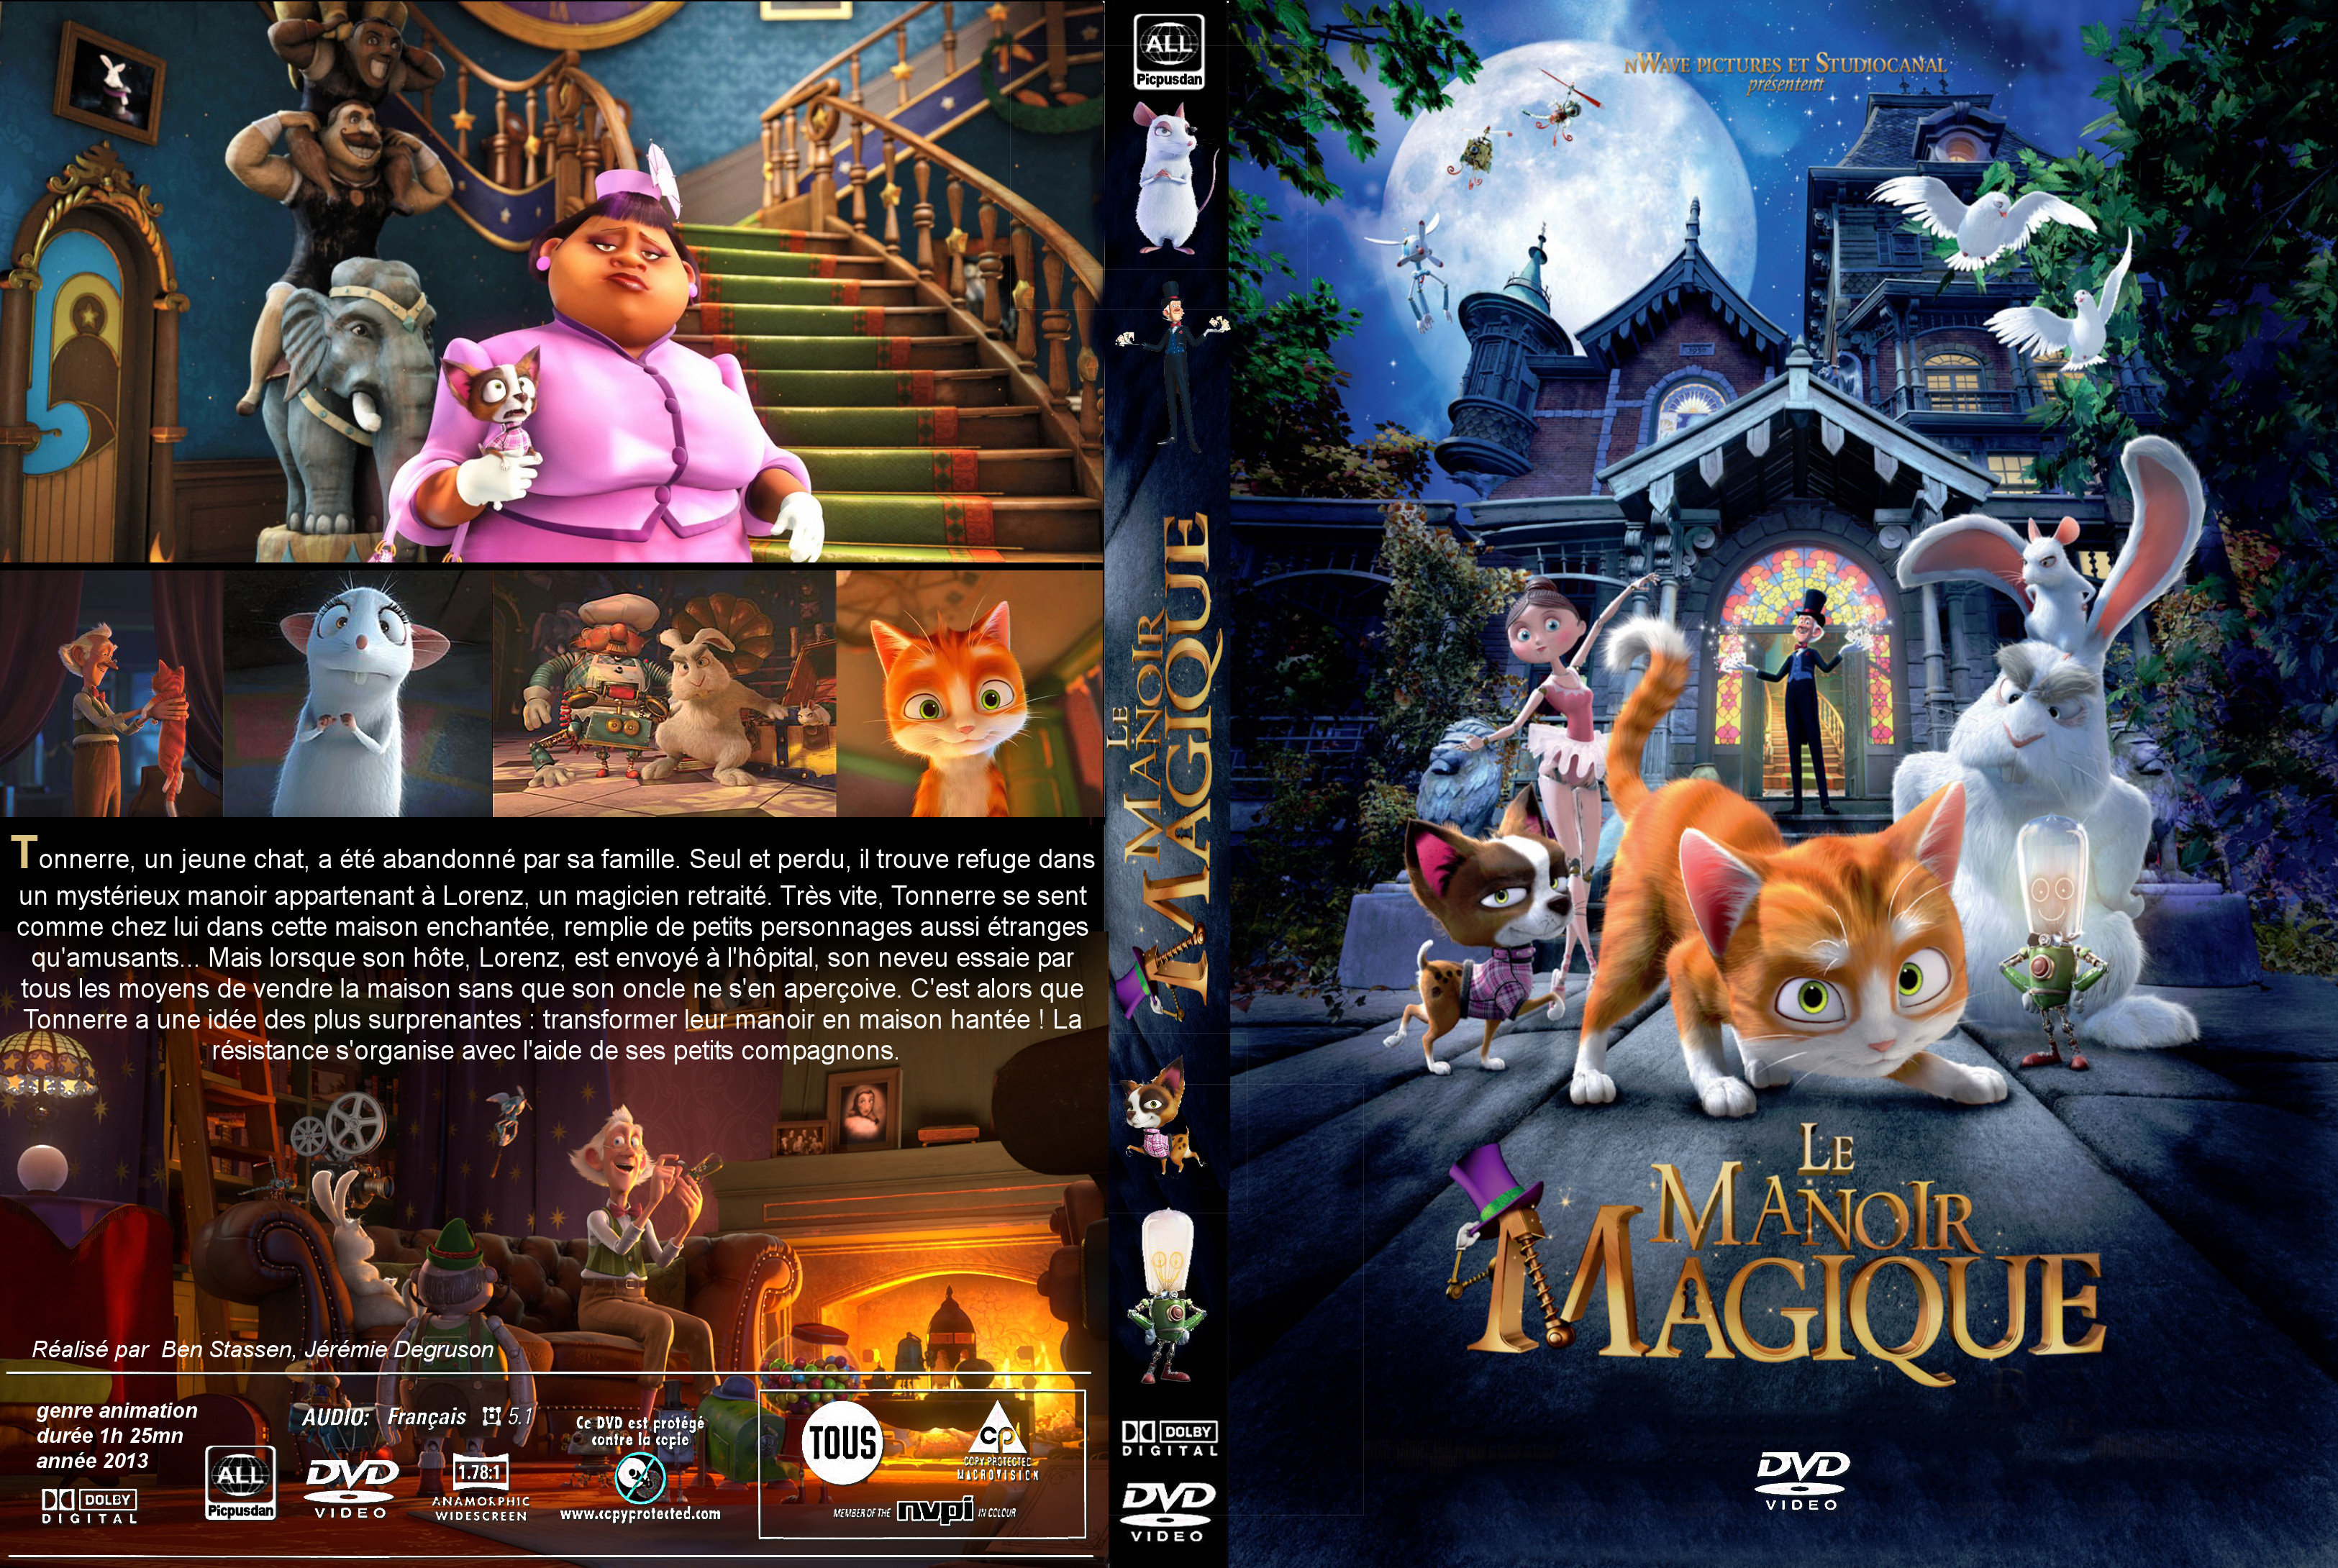 Jaquette DVD Le Manoir magique custom